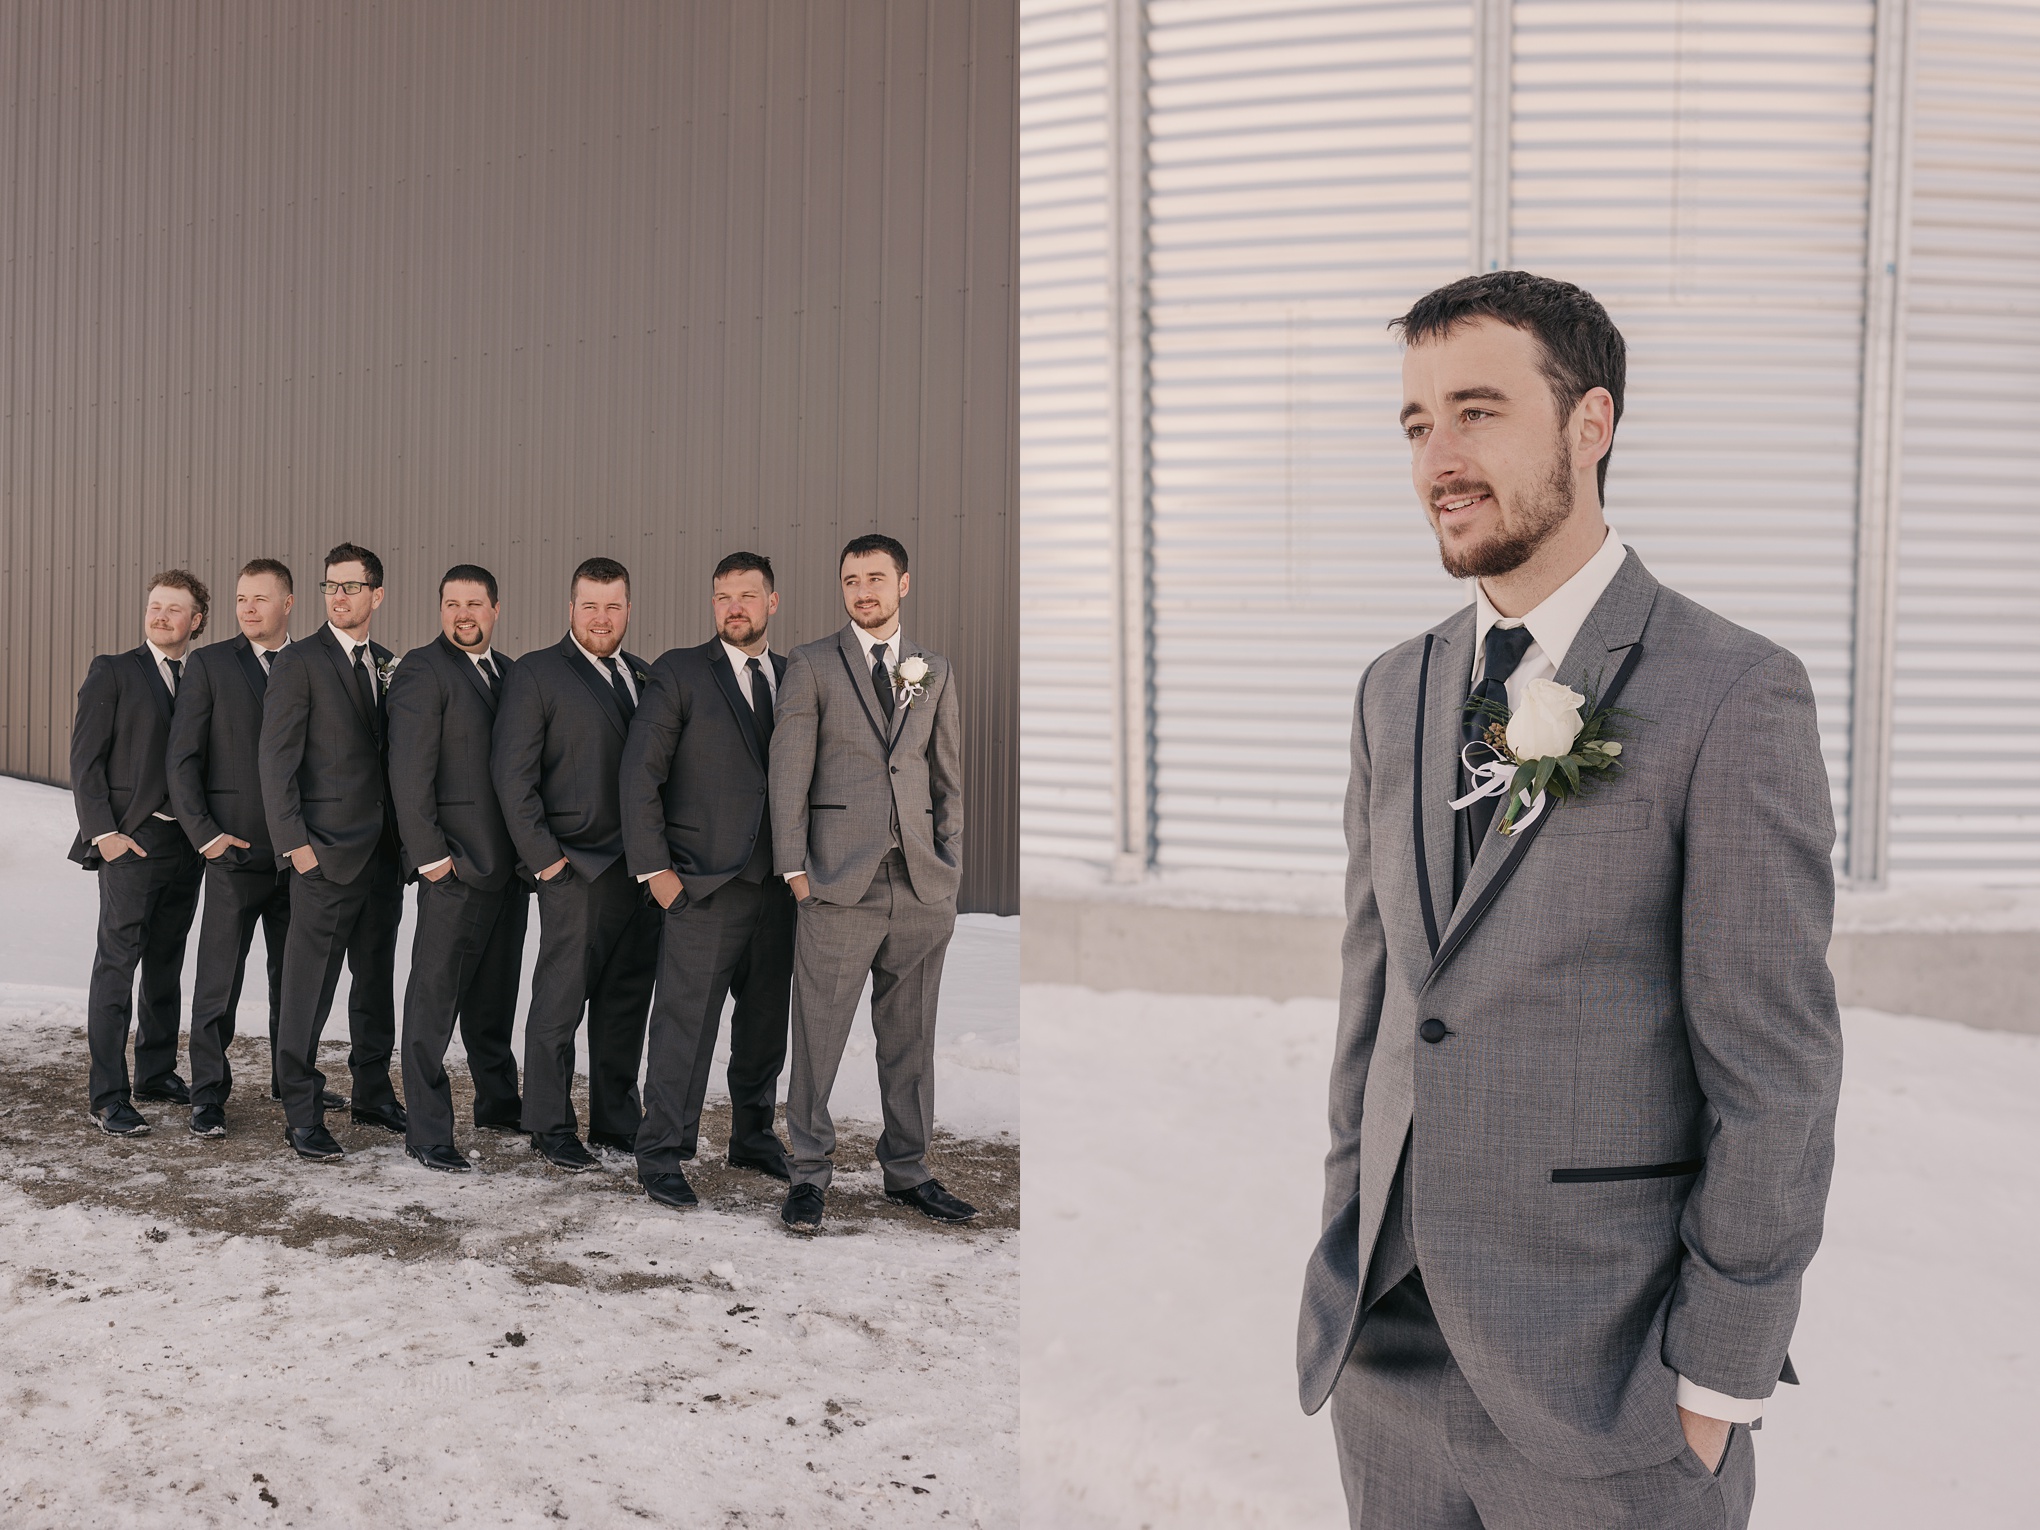 Snowy Spring Saskatchewan Wedding